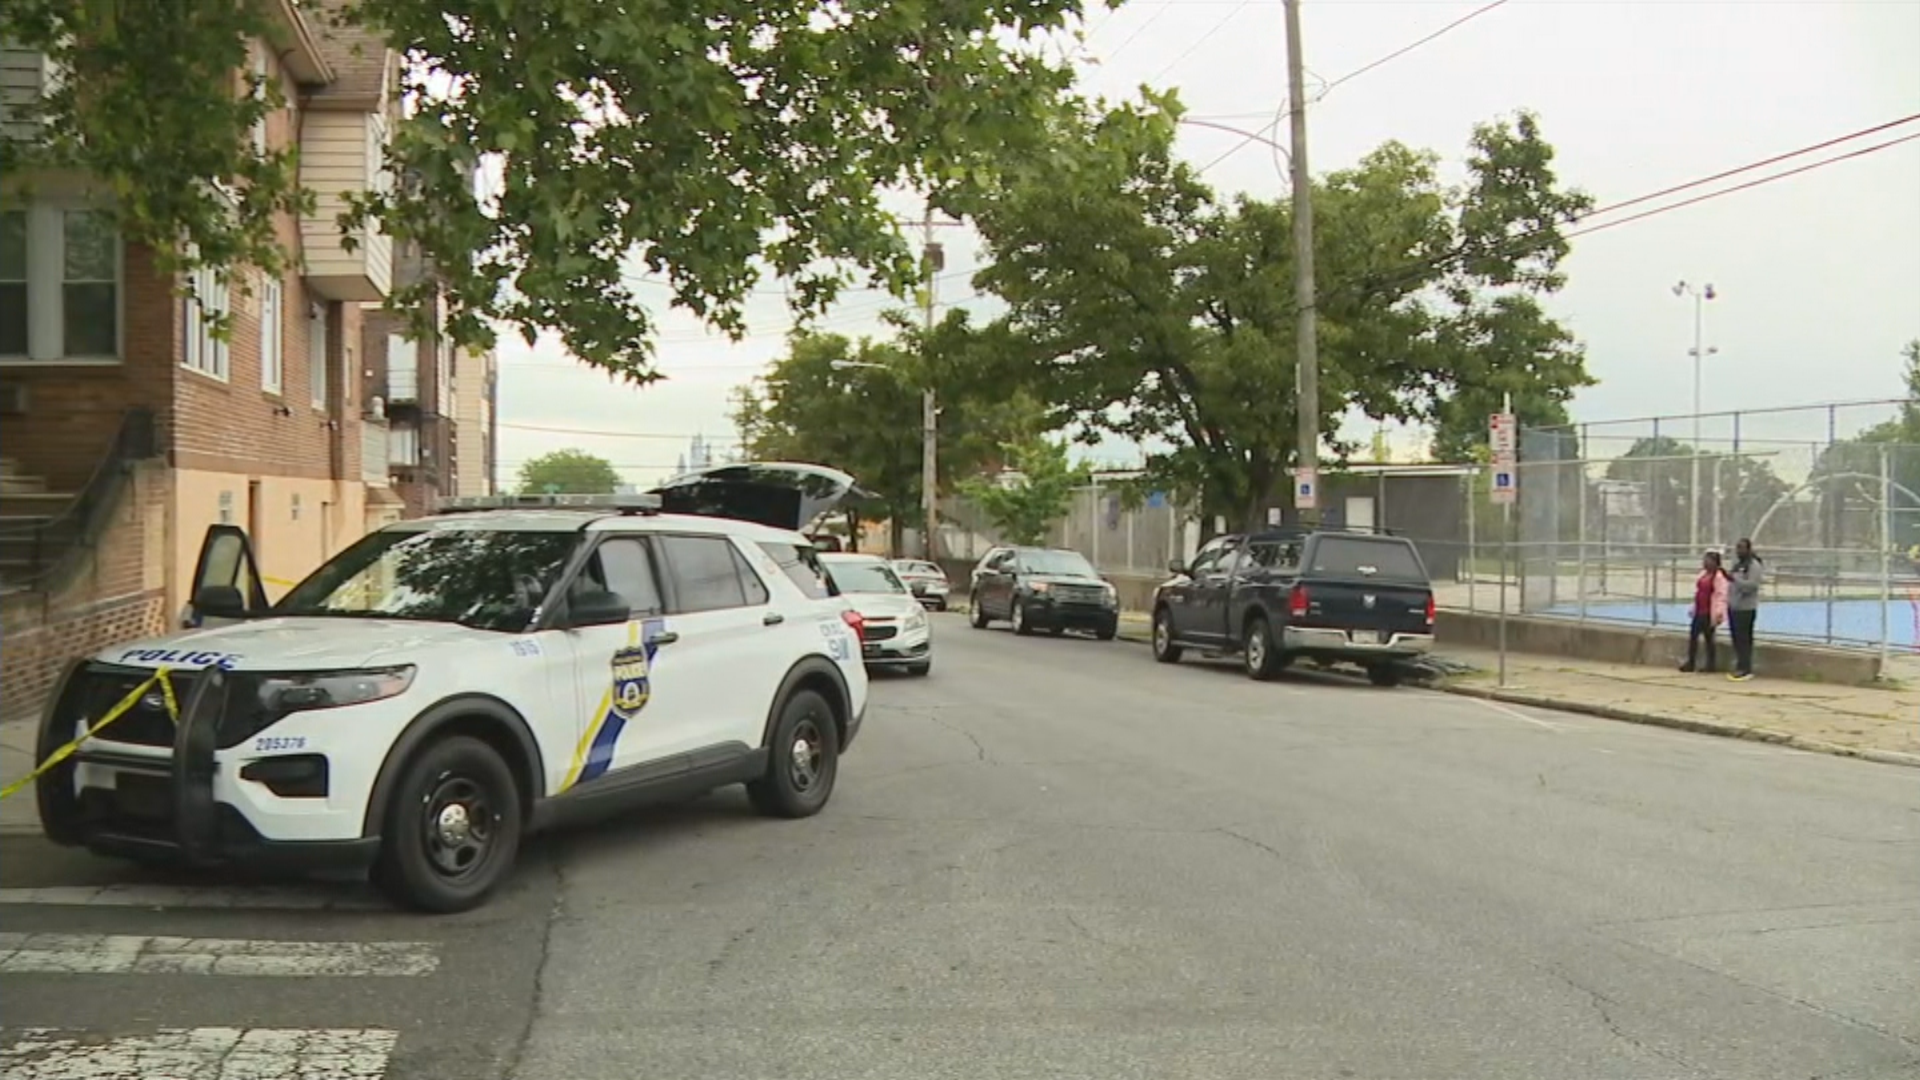 4 Separate Shootings In Philadelphia Leave 3 Men, 1 Woman Injured: Police